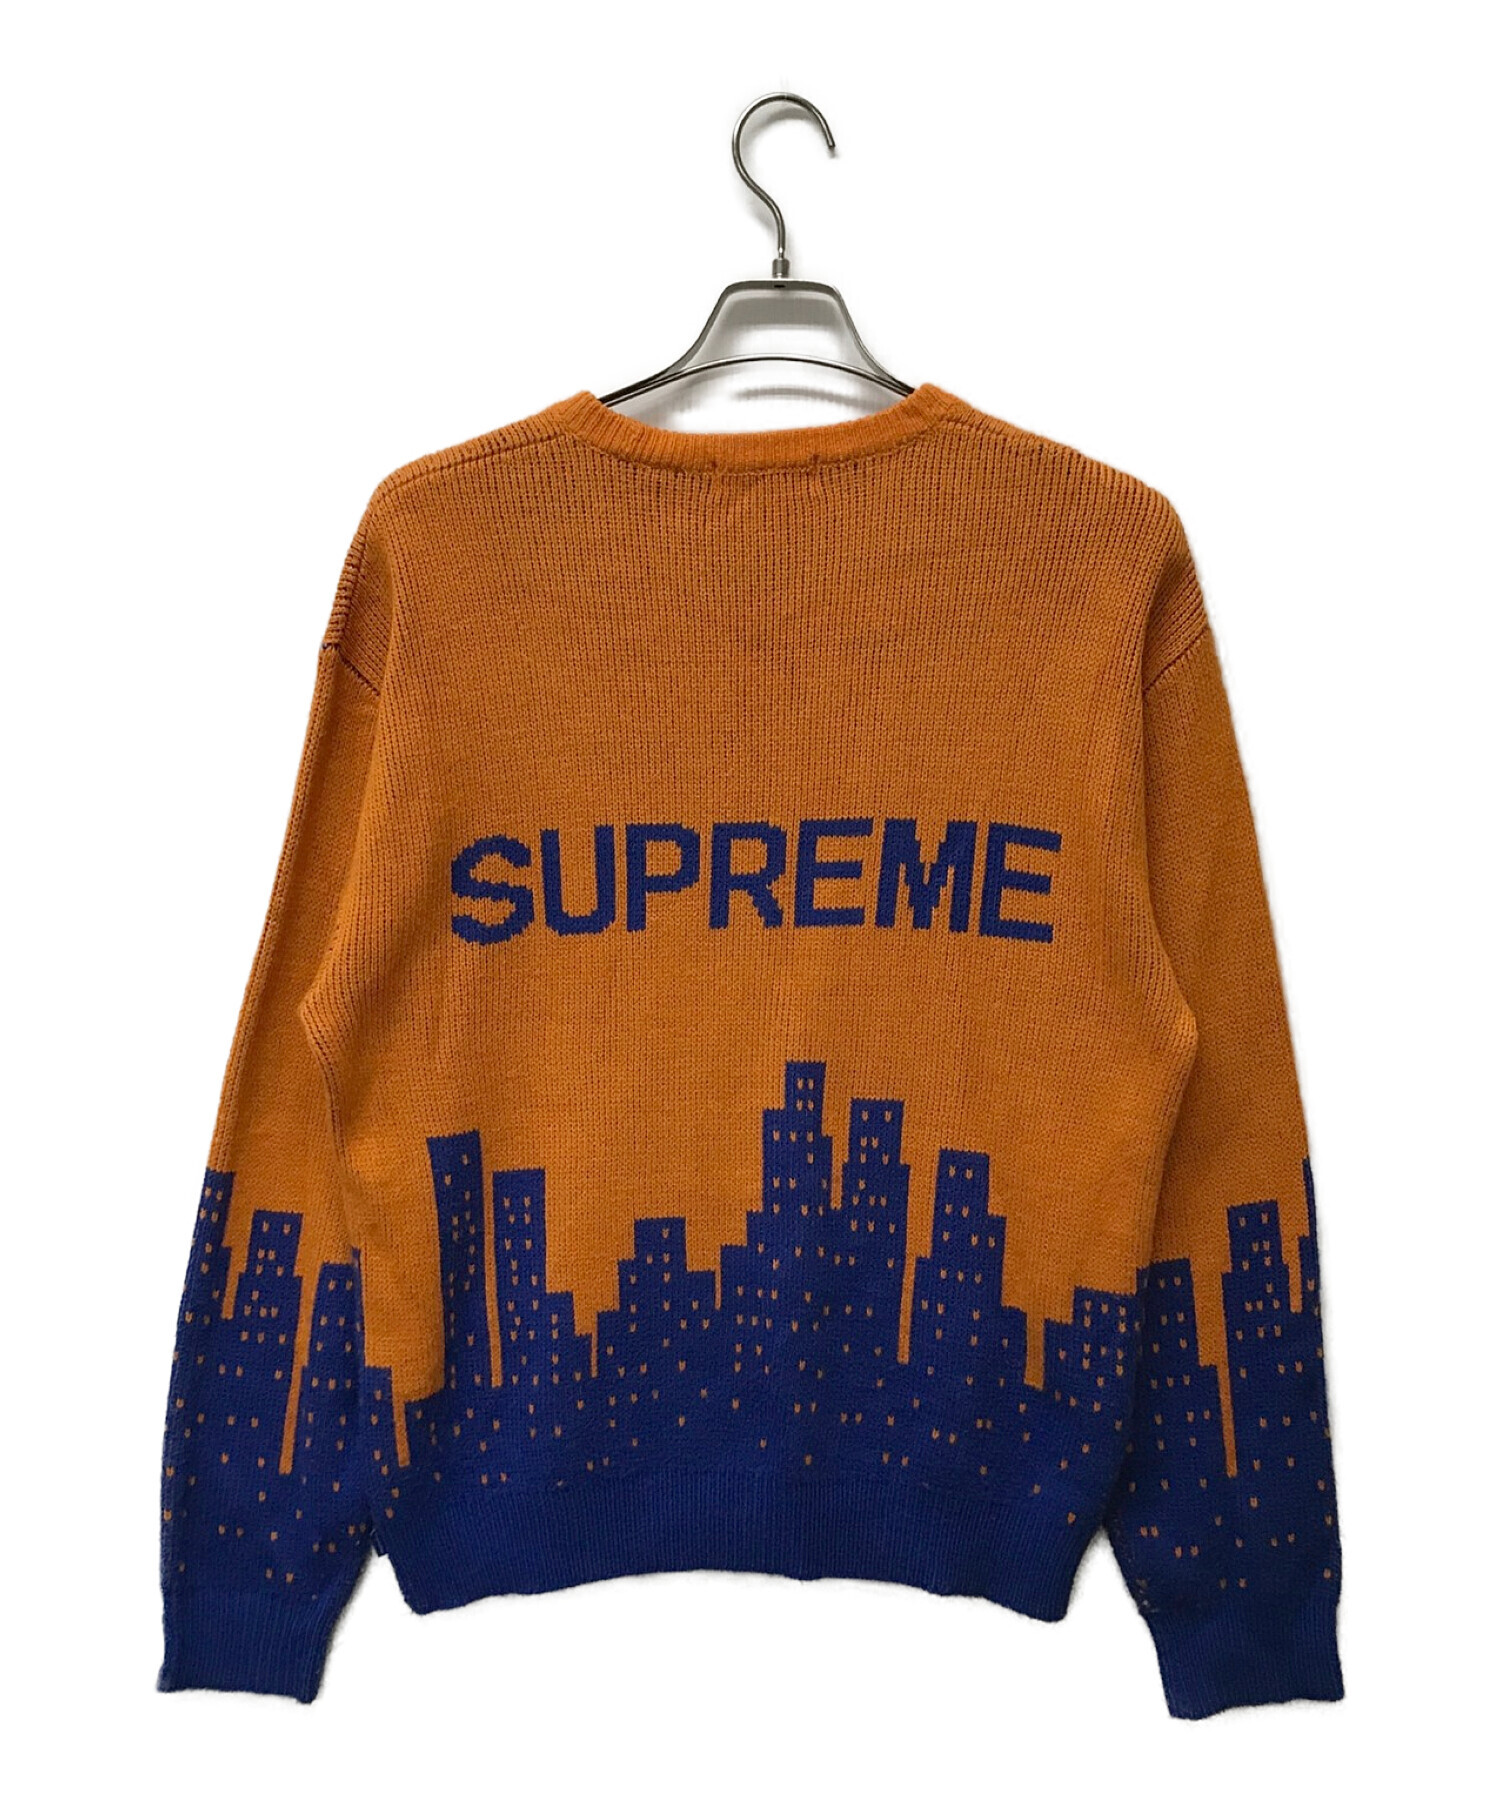 Supreme (シュプリーム) newyork sweater オレンジ サイズ:M